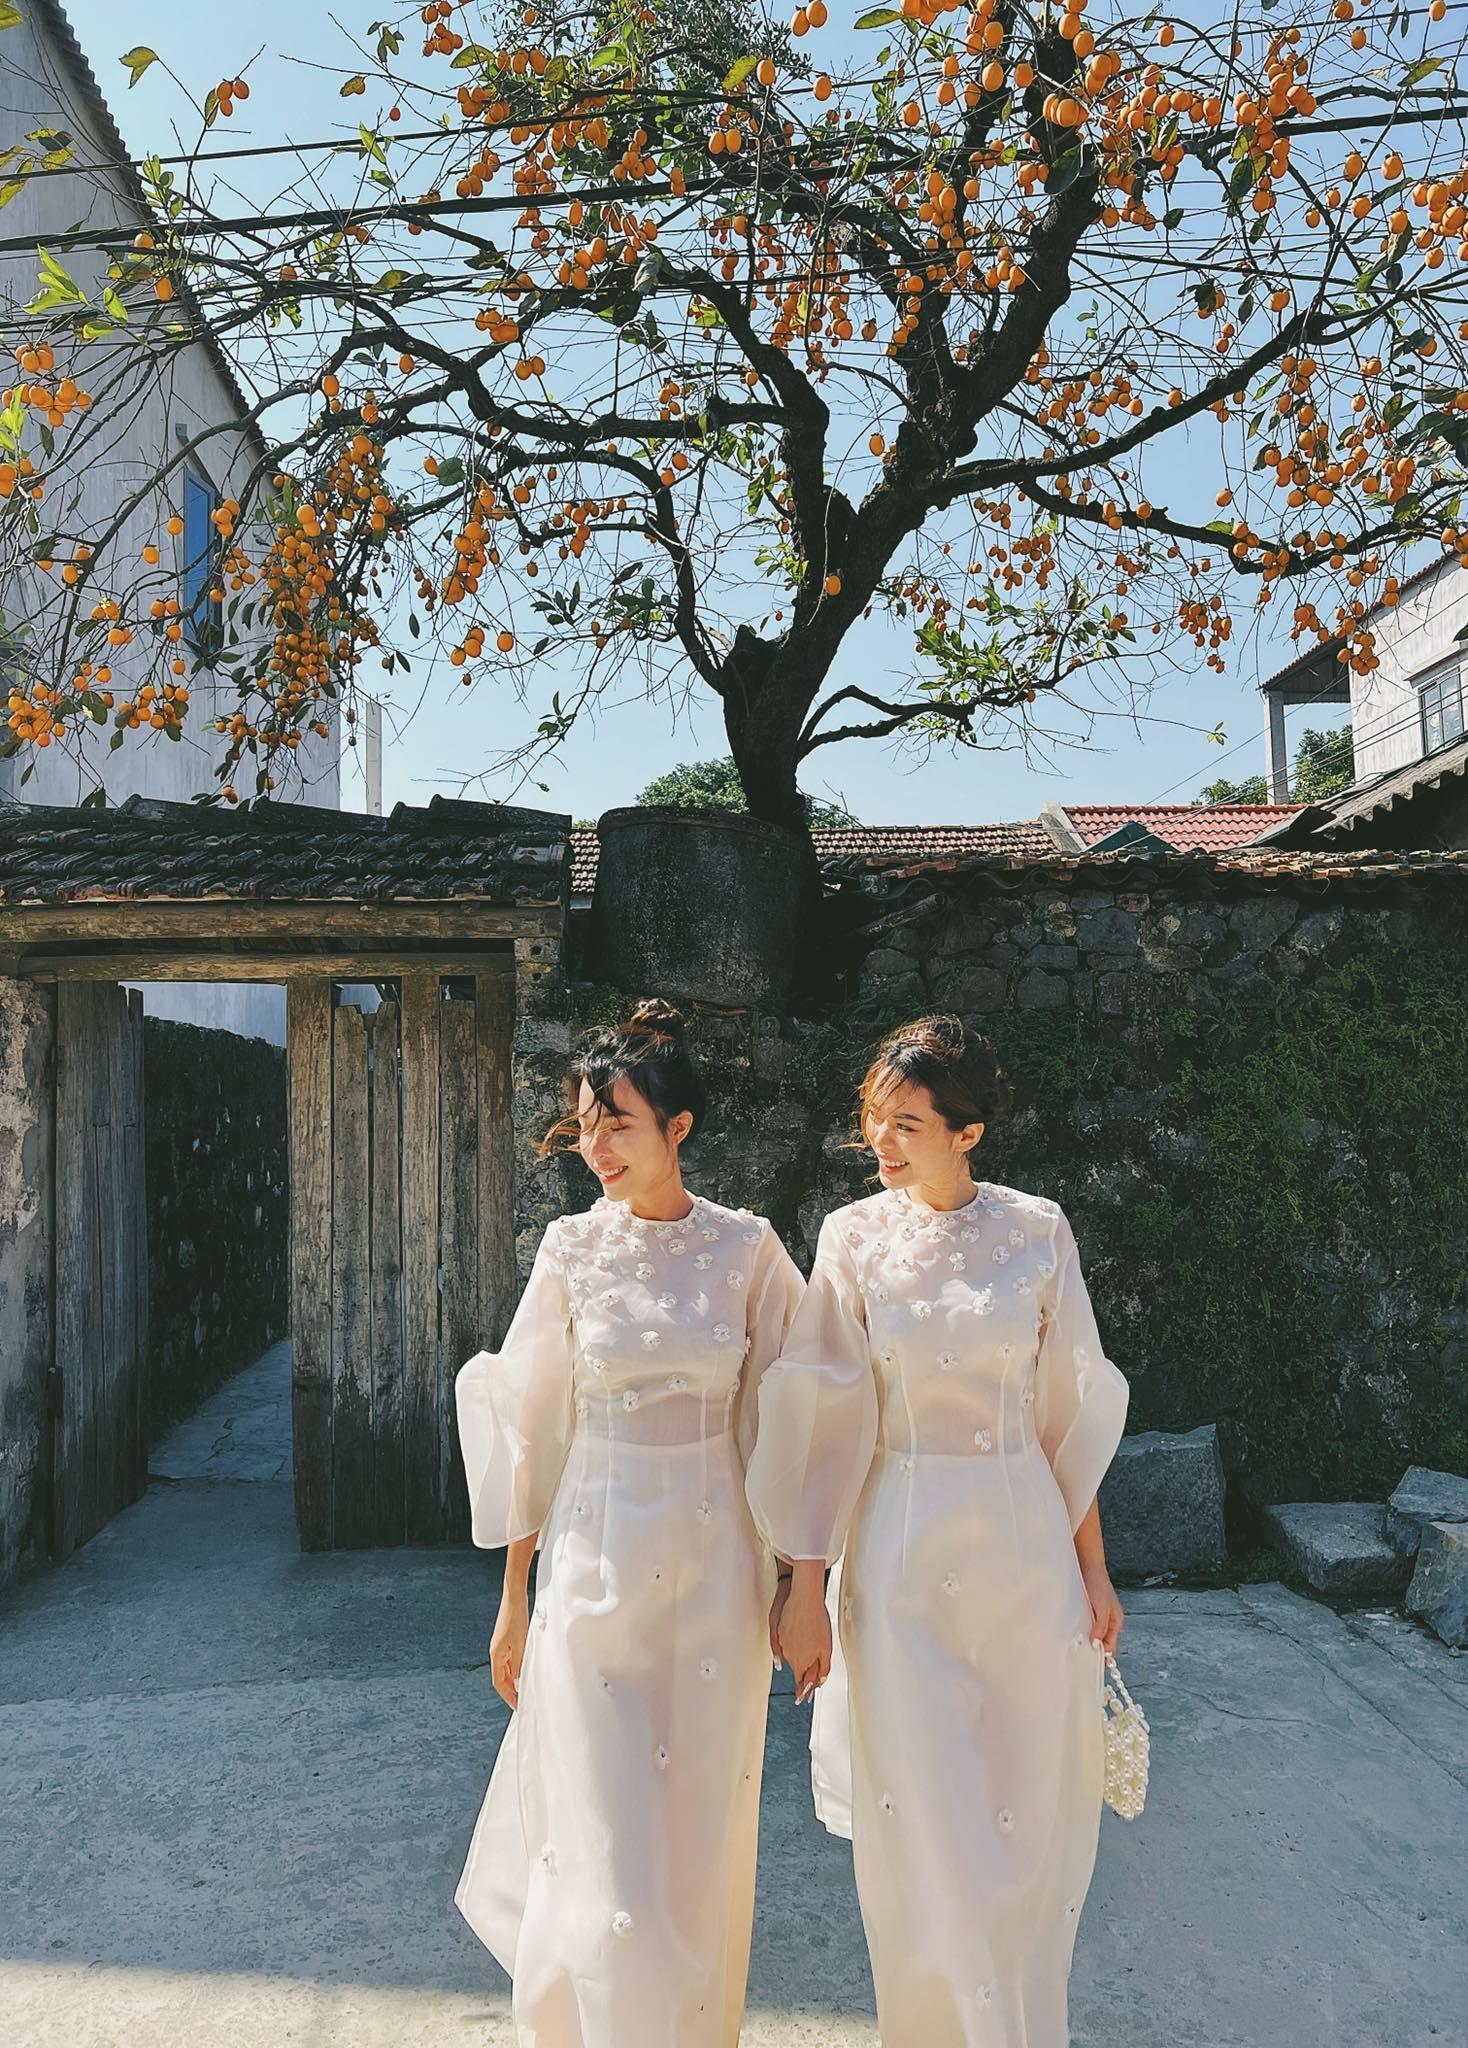 Tranh cãi 'nảy lửa' việc mặc hanbok Hàn Quốc check-in cây hồng cổ nổi tiếng Ninh Bình